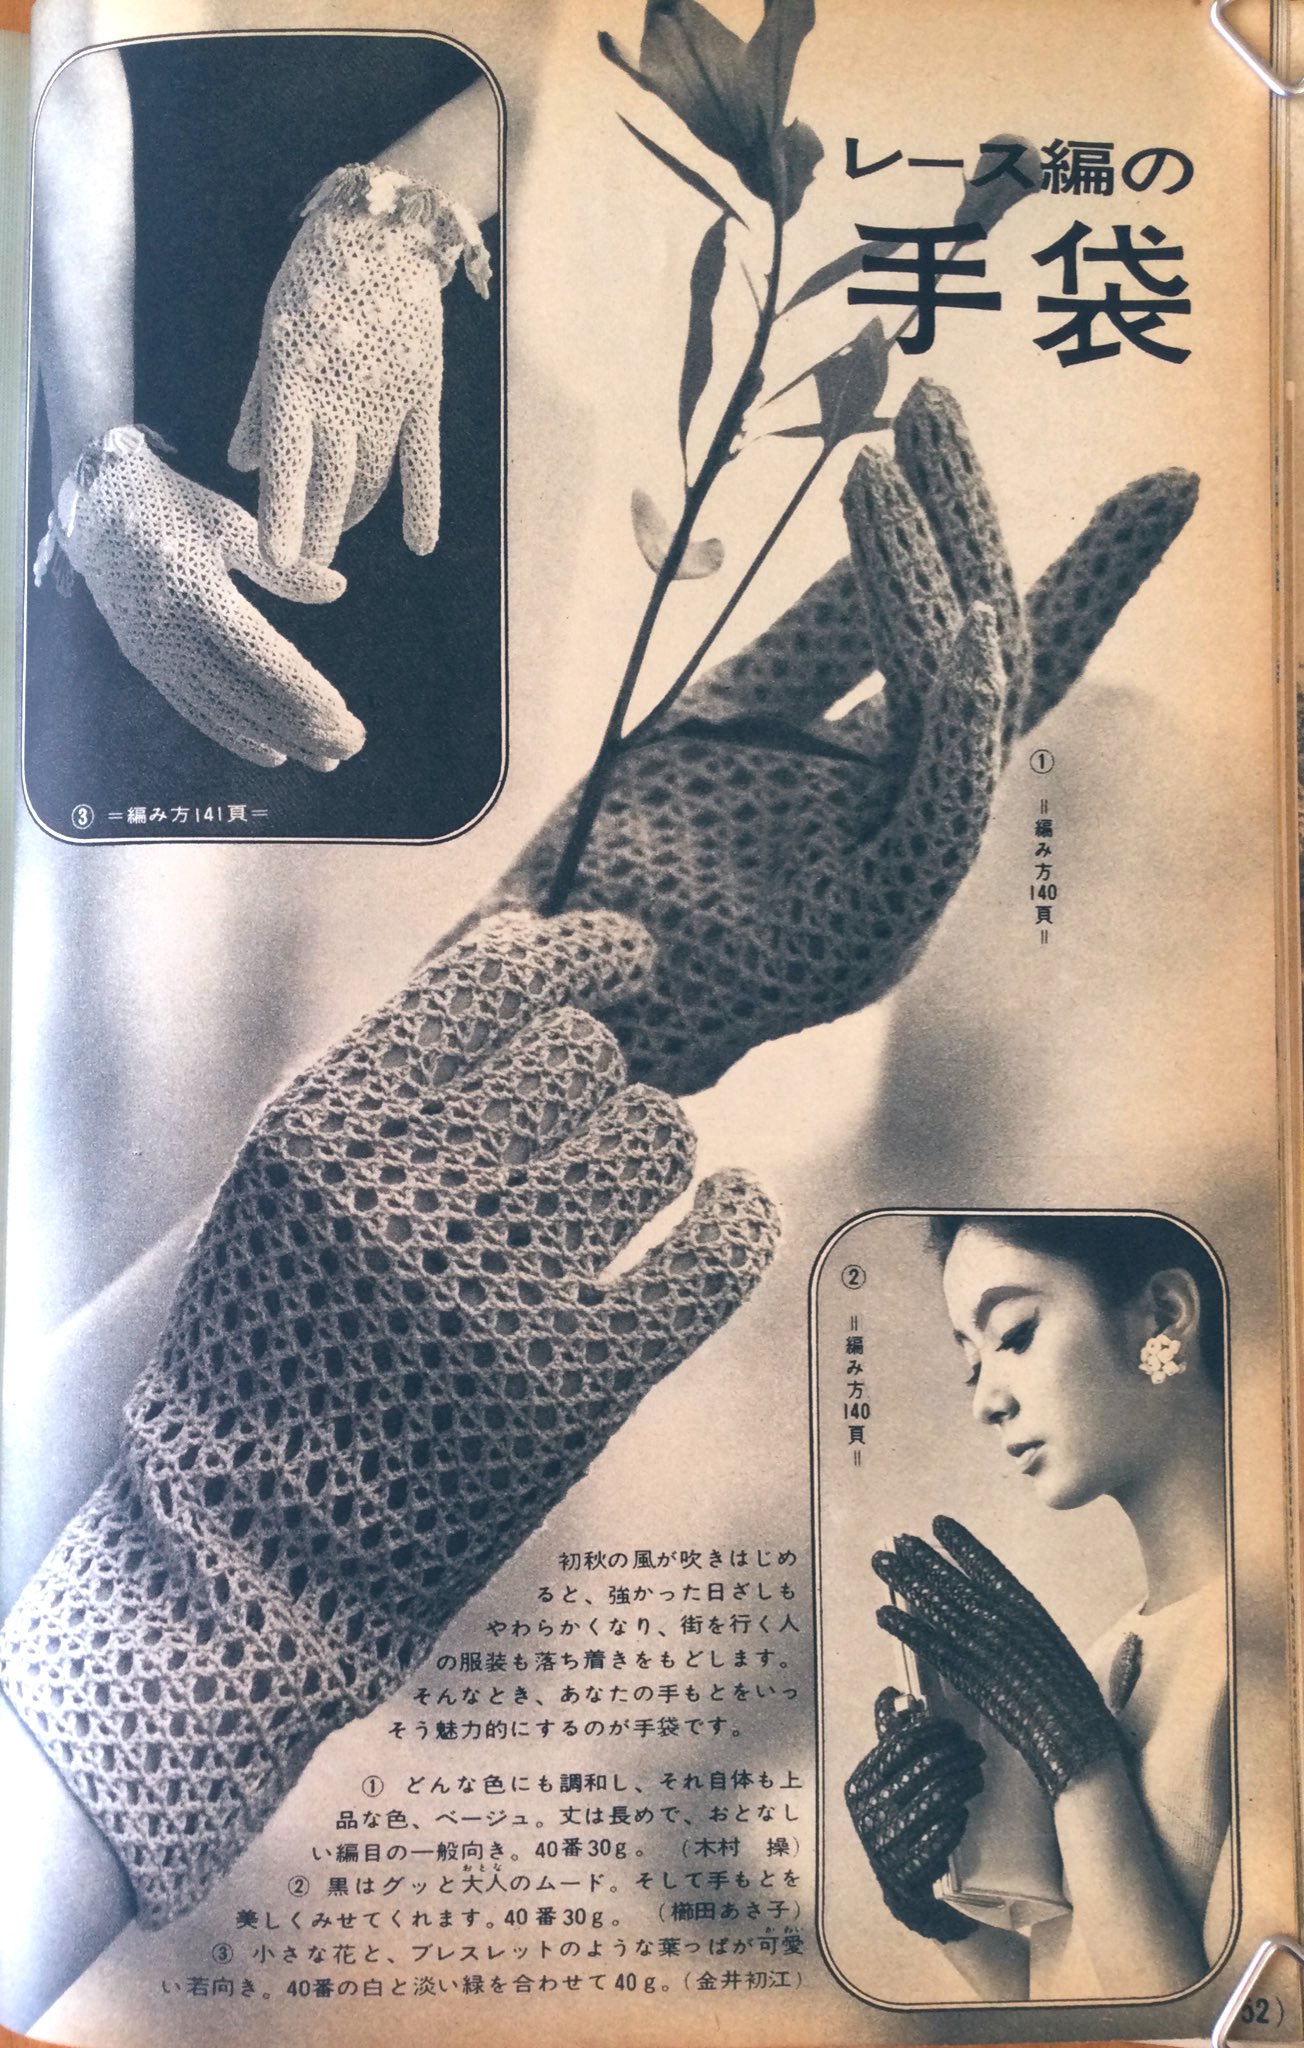 تويتر 雑貨奥様 على تويتر 昭和41年 いま流行の かぎ針編のセーターと手芸 より ちょっとの糸で楽しい小ものを レース編みの手袋 です コンパクトケースが可愛かったので 編み図を載せてみました 昭和レトロ 手芸 T Co A0nfjlf1kd